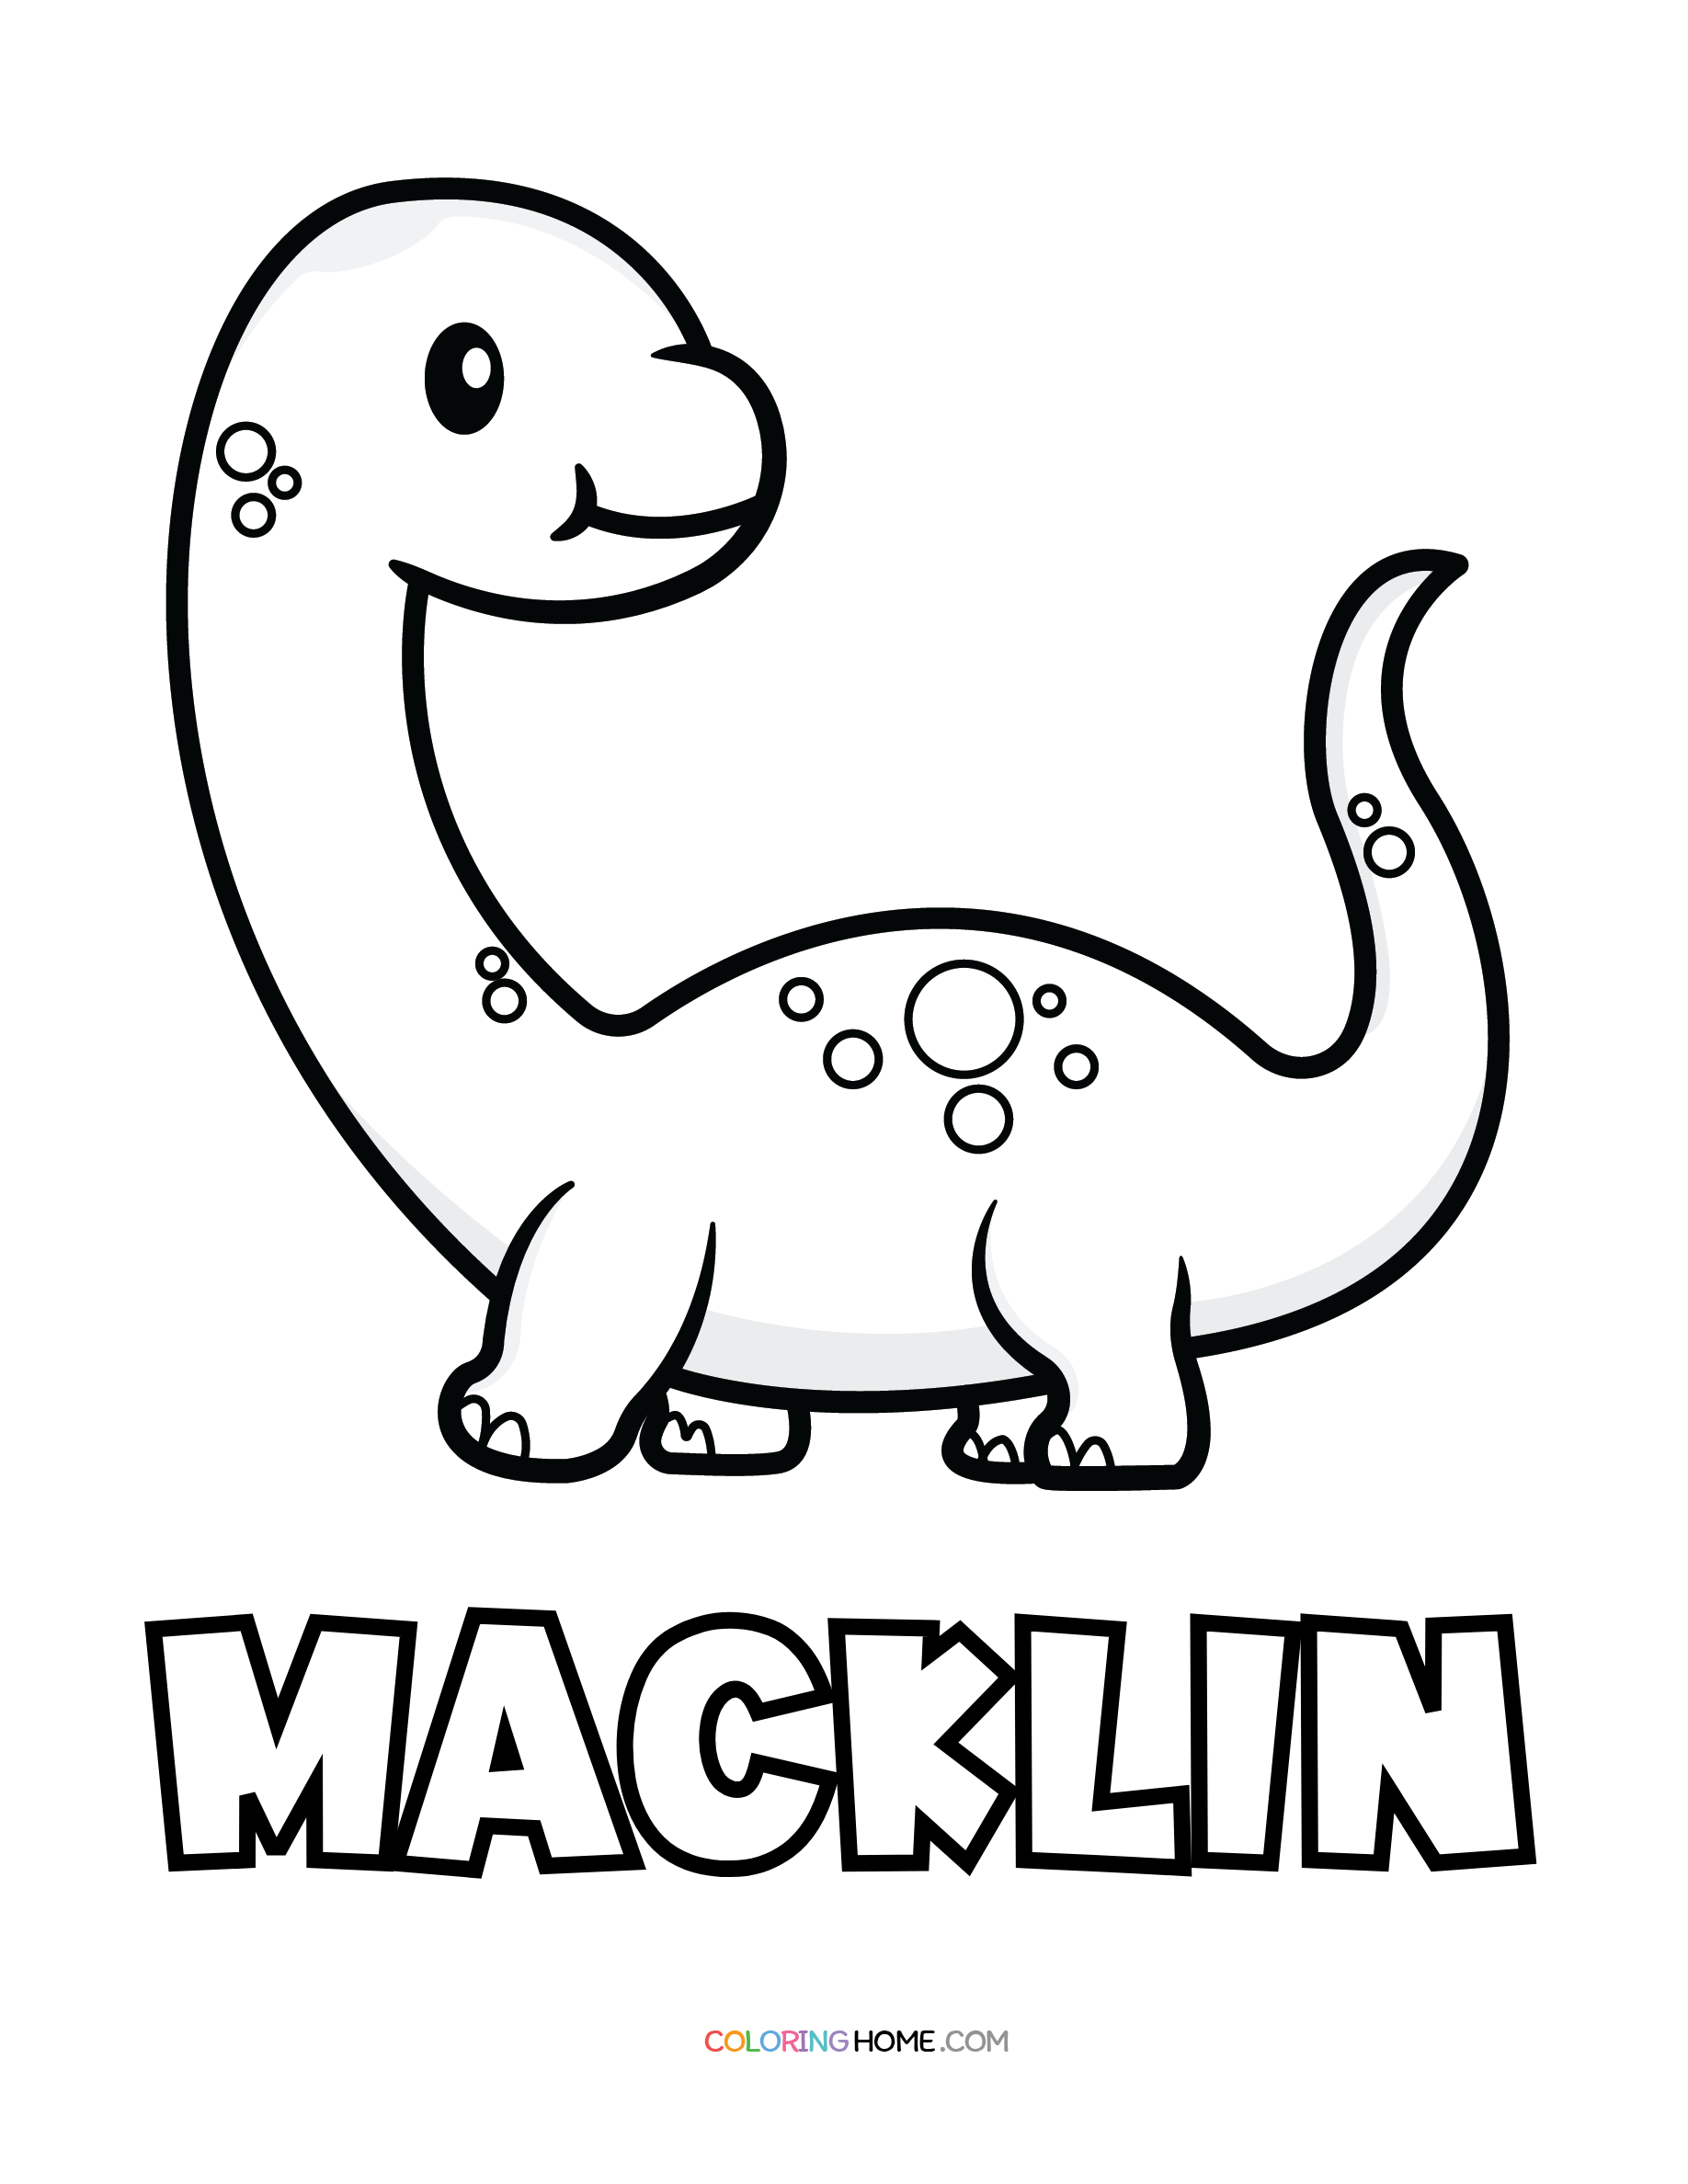 Macklin dinosaur coloring page